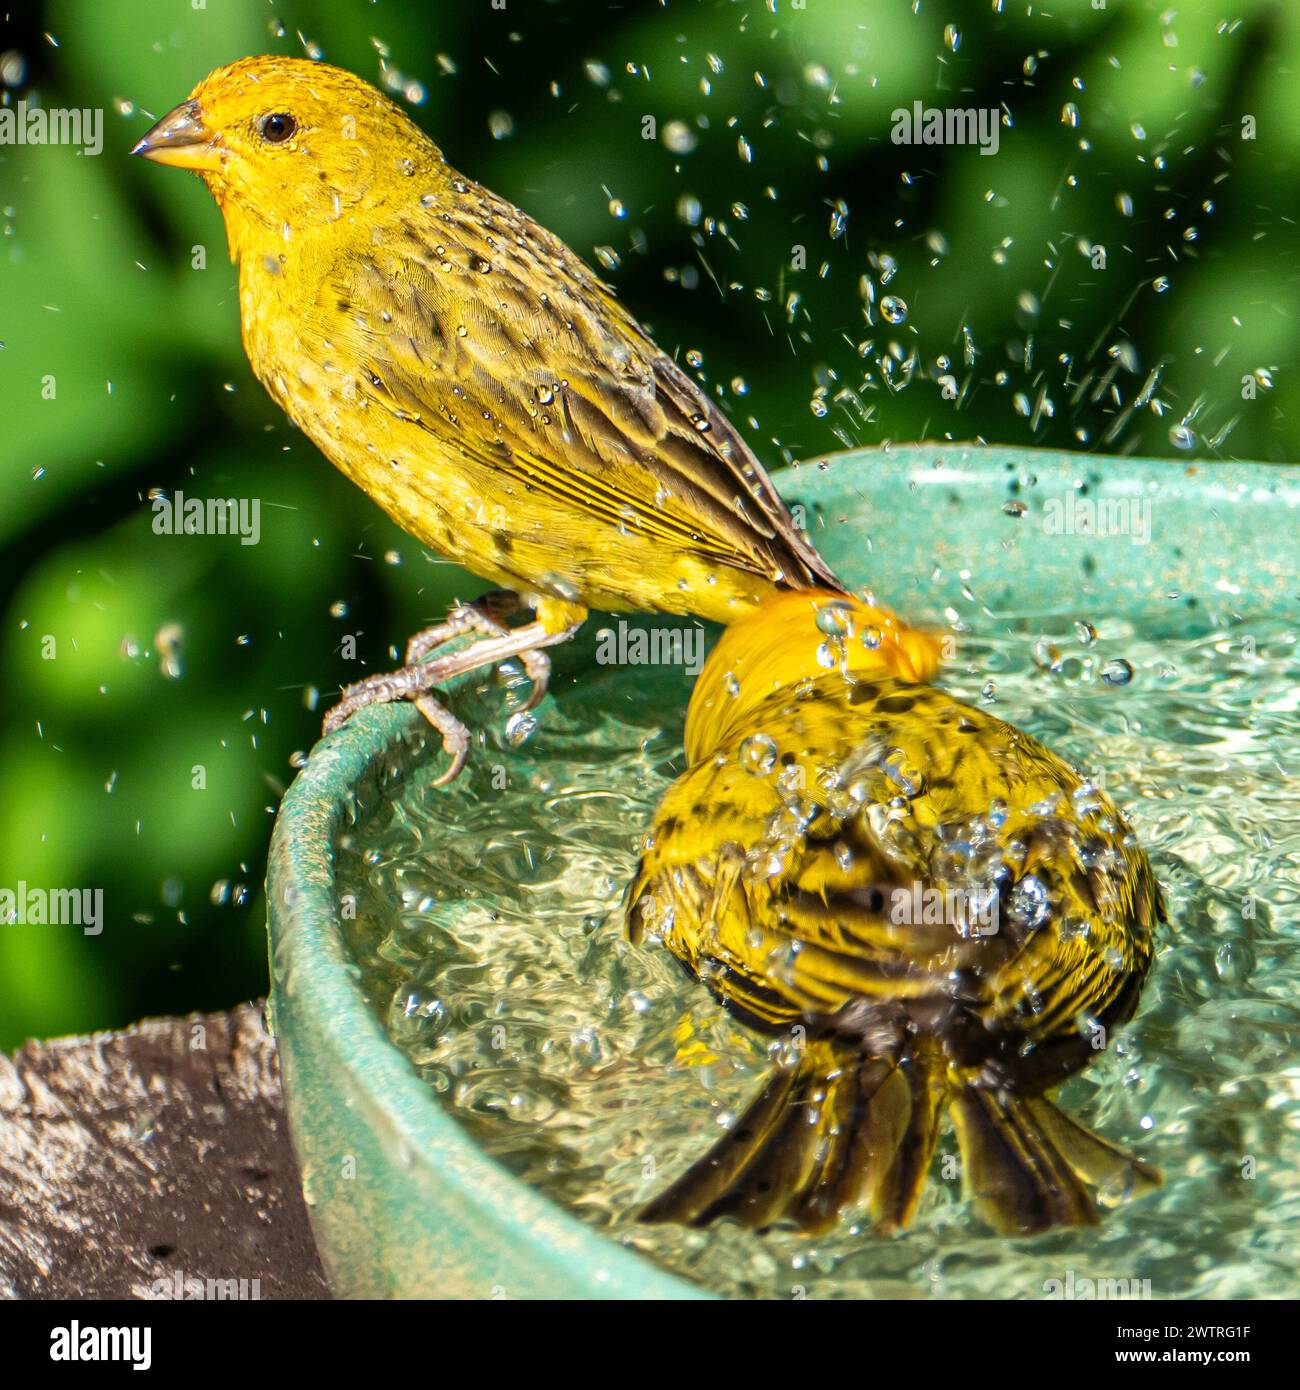 Atlantic Canary, un piccolo uccello selvatico brasiliano. Il giallo canarino Crithagra flaviventris è un piccolo uccello passerino della famiglia delle fringuine. Foto Stock